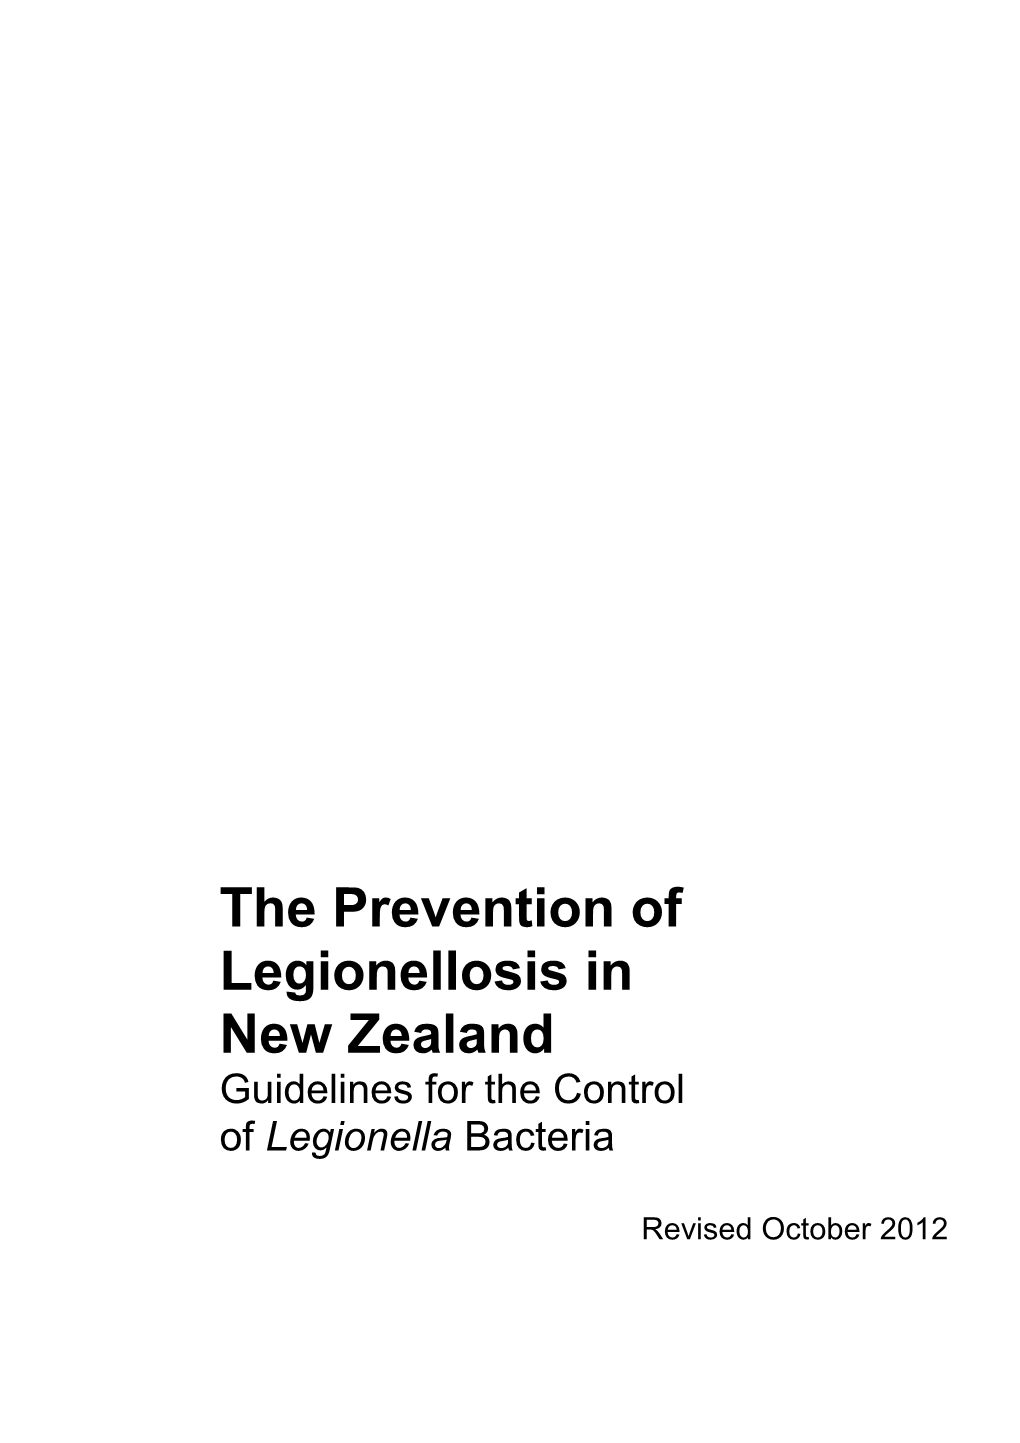 The Prevention of Legionellosis in Newzealand